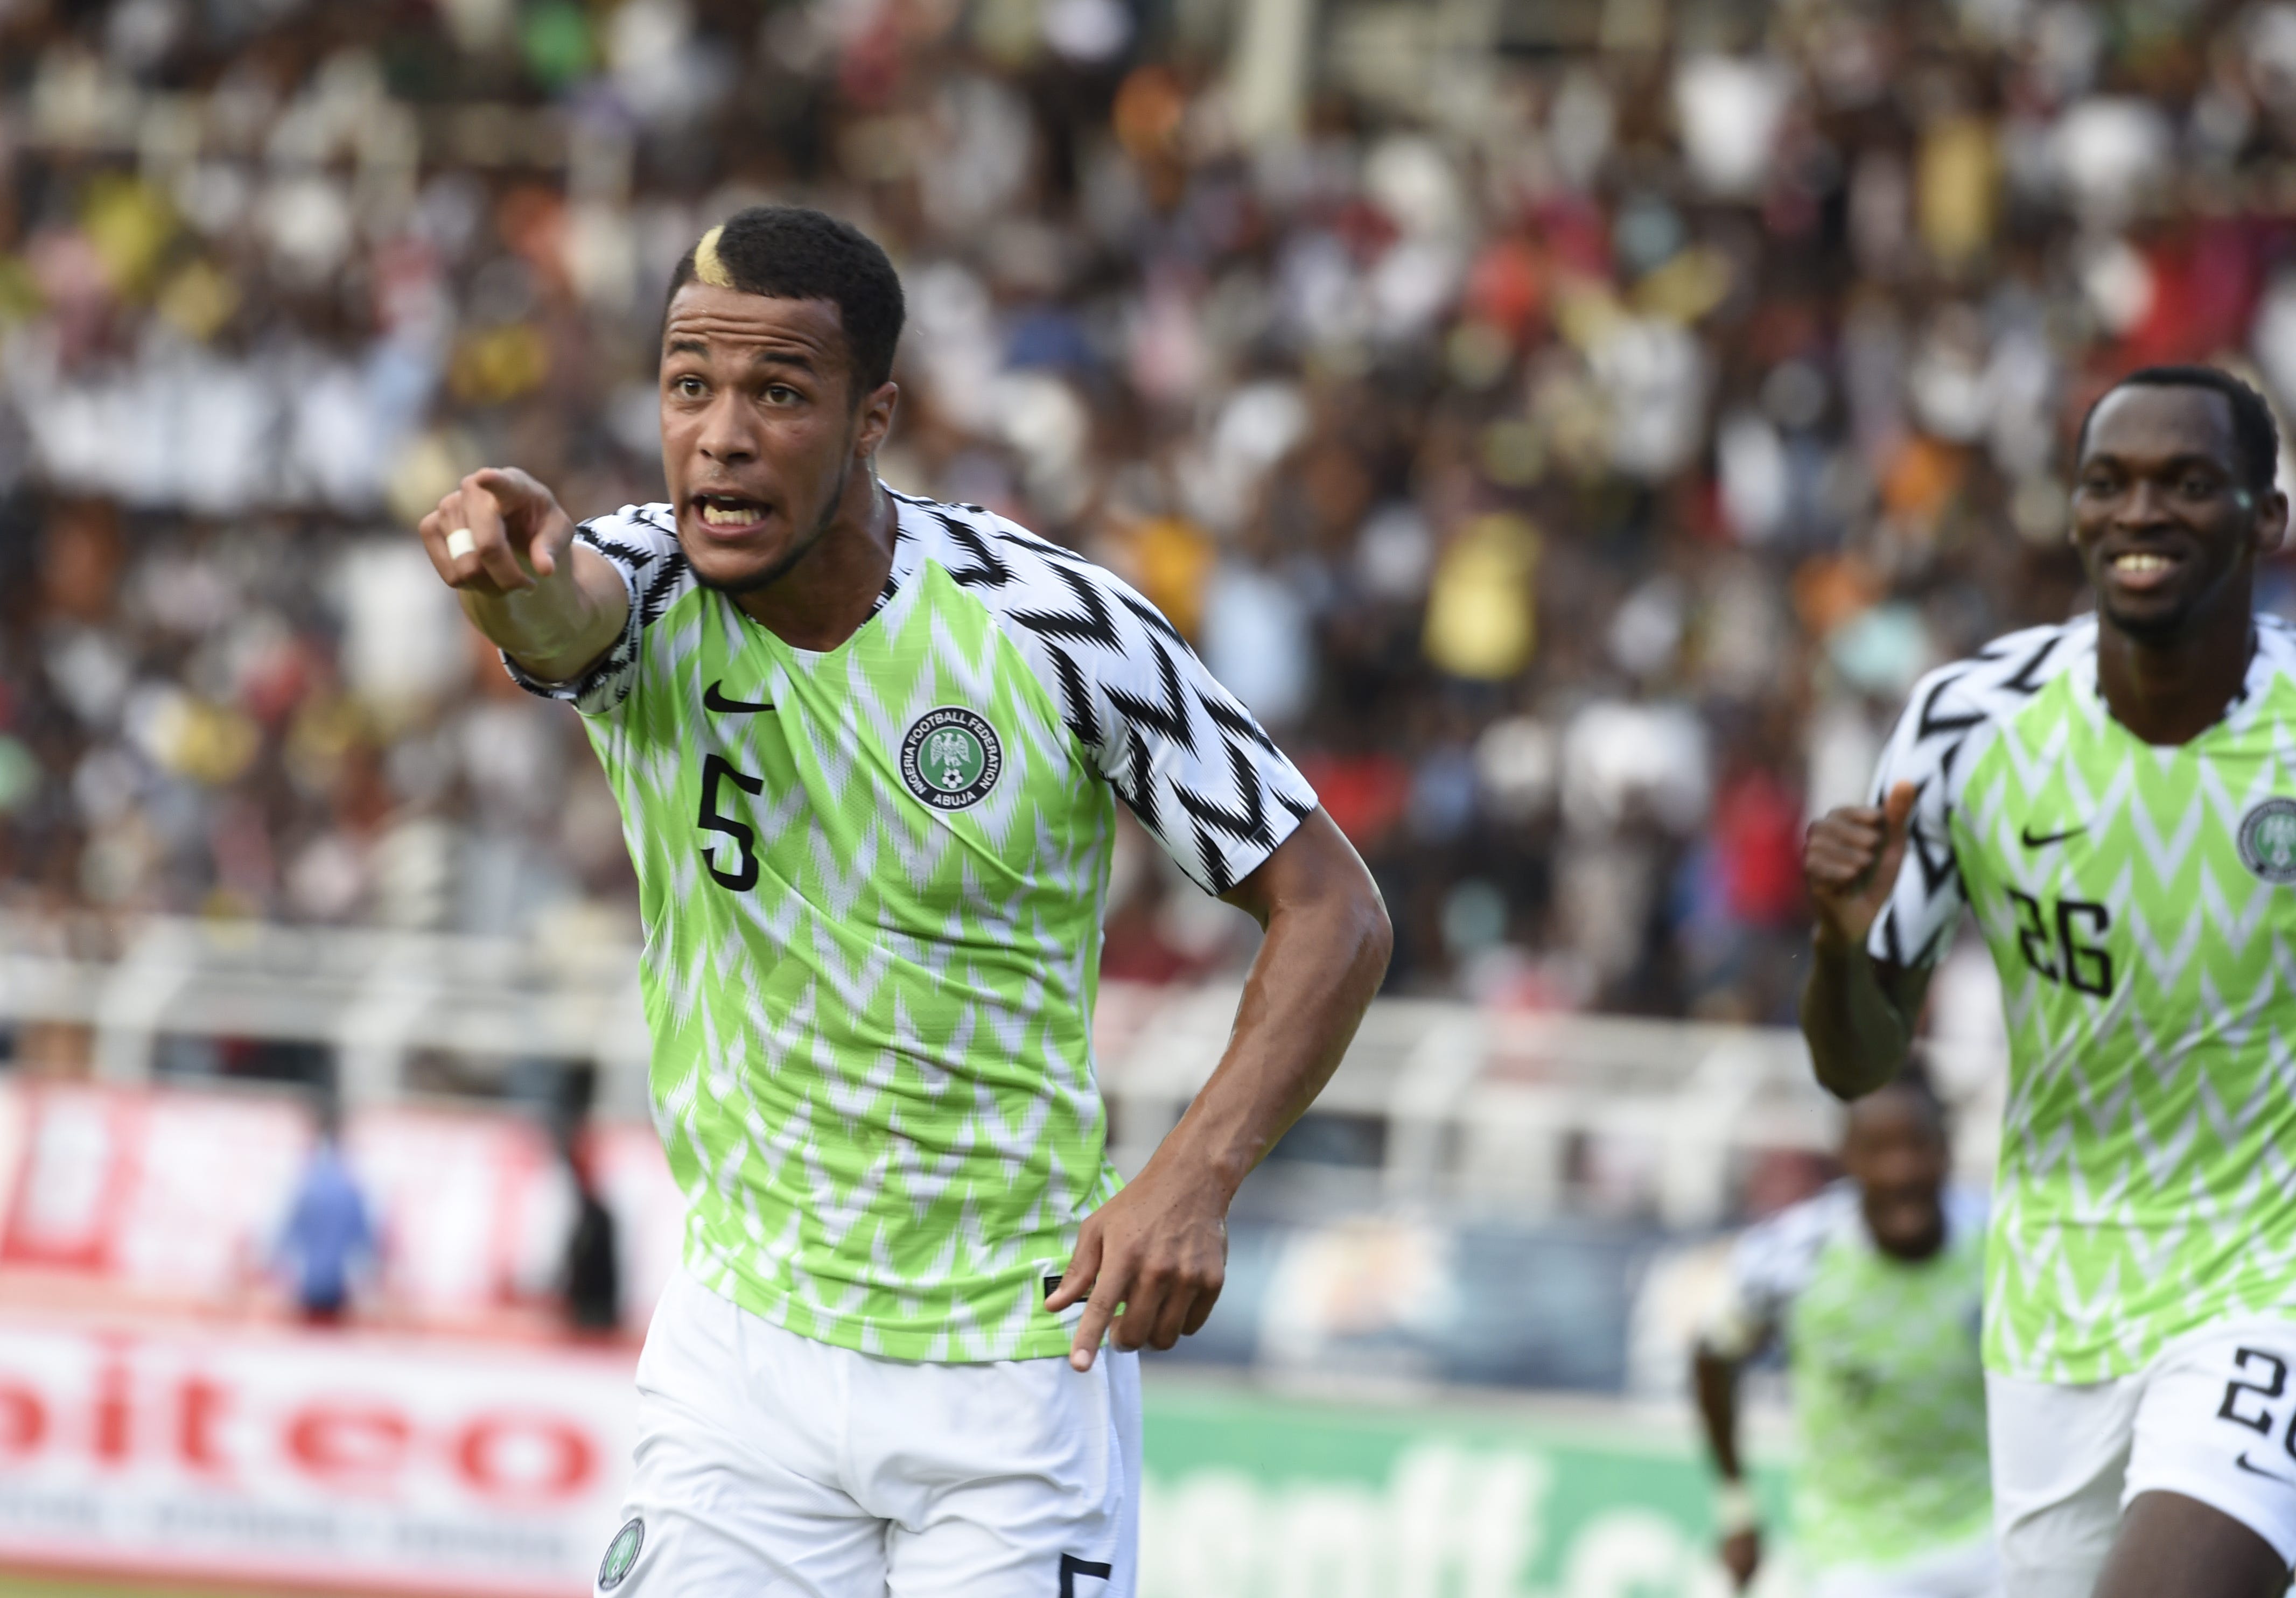 Nigeria soccer legends' kits